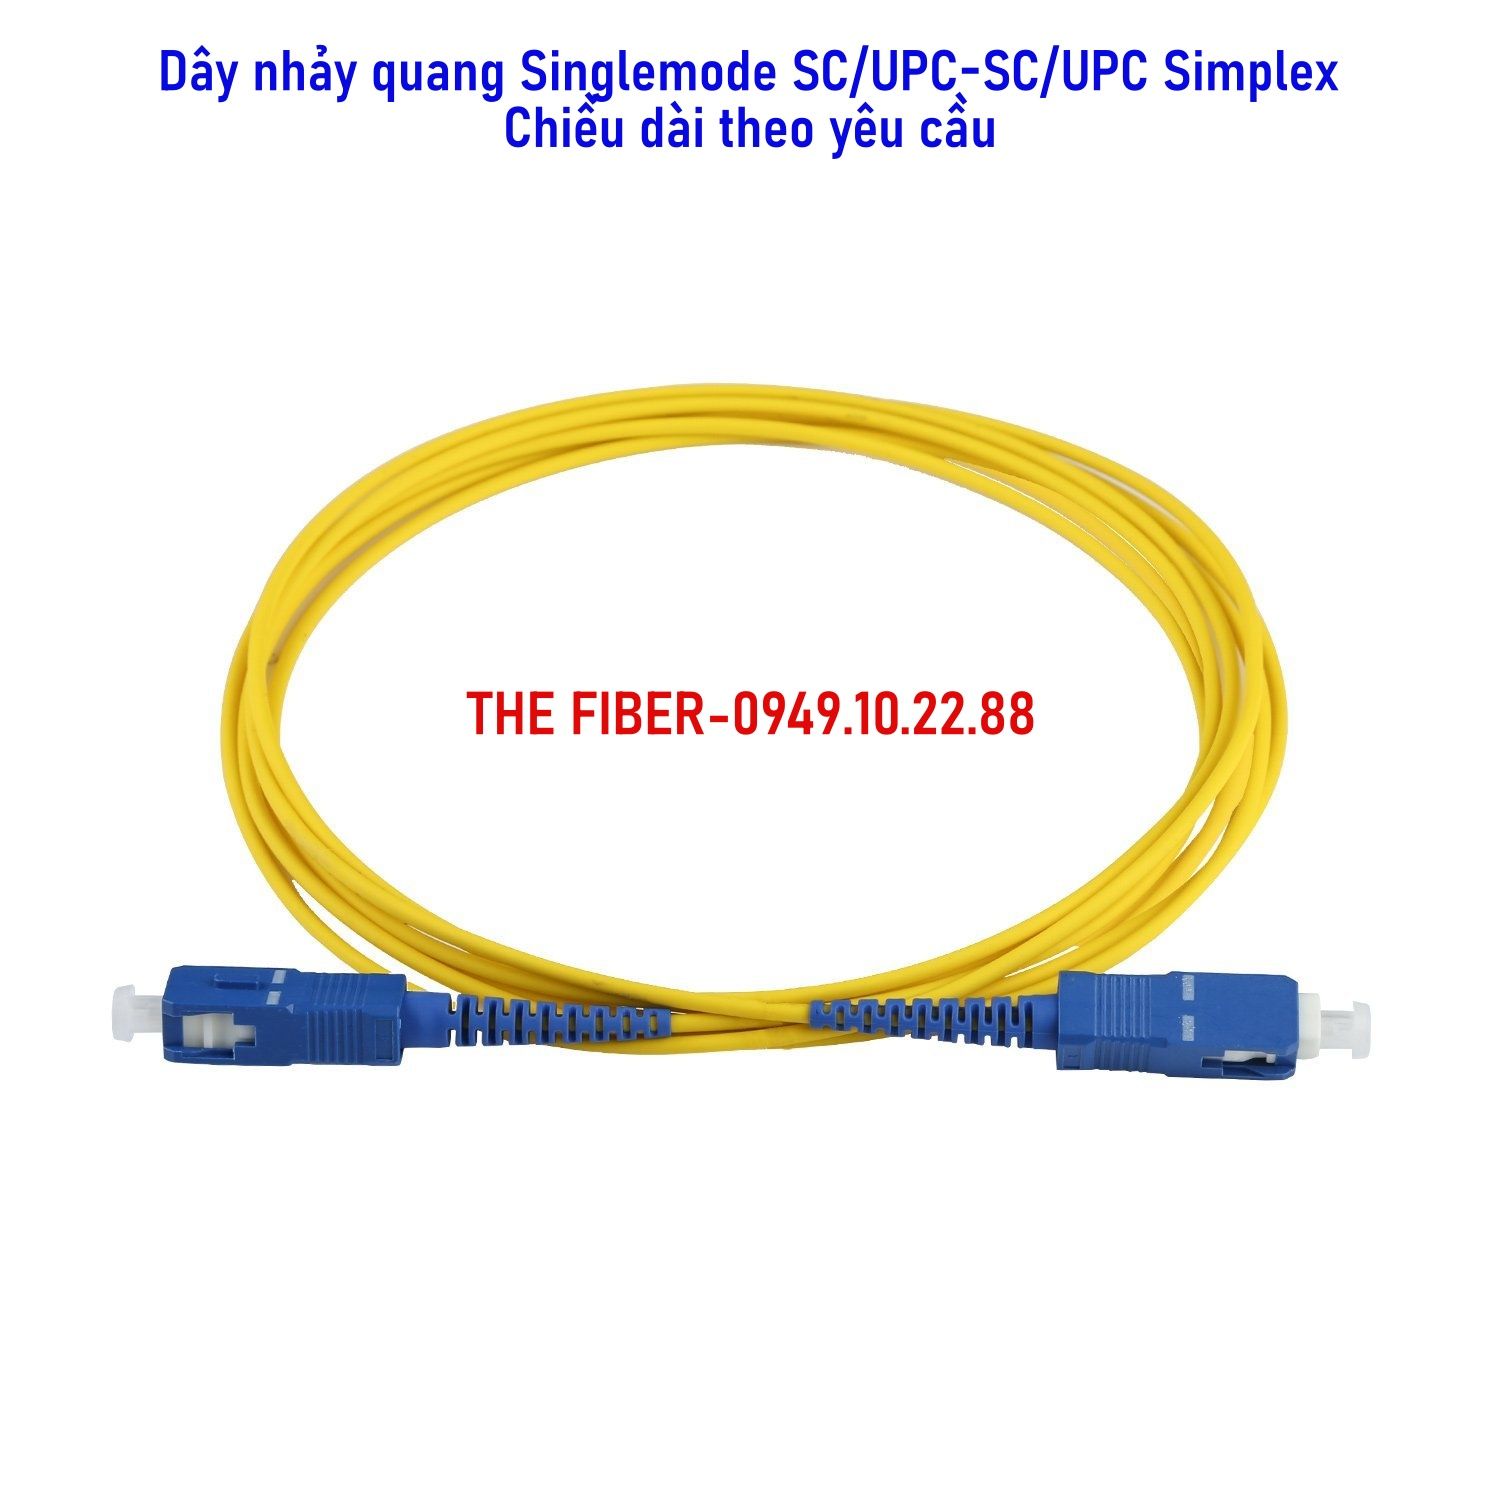 Dây nhảy quang Singlemode SC/UPC-SC/UPC Simplex - Chiều dài theo yêu cầu